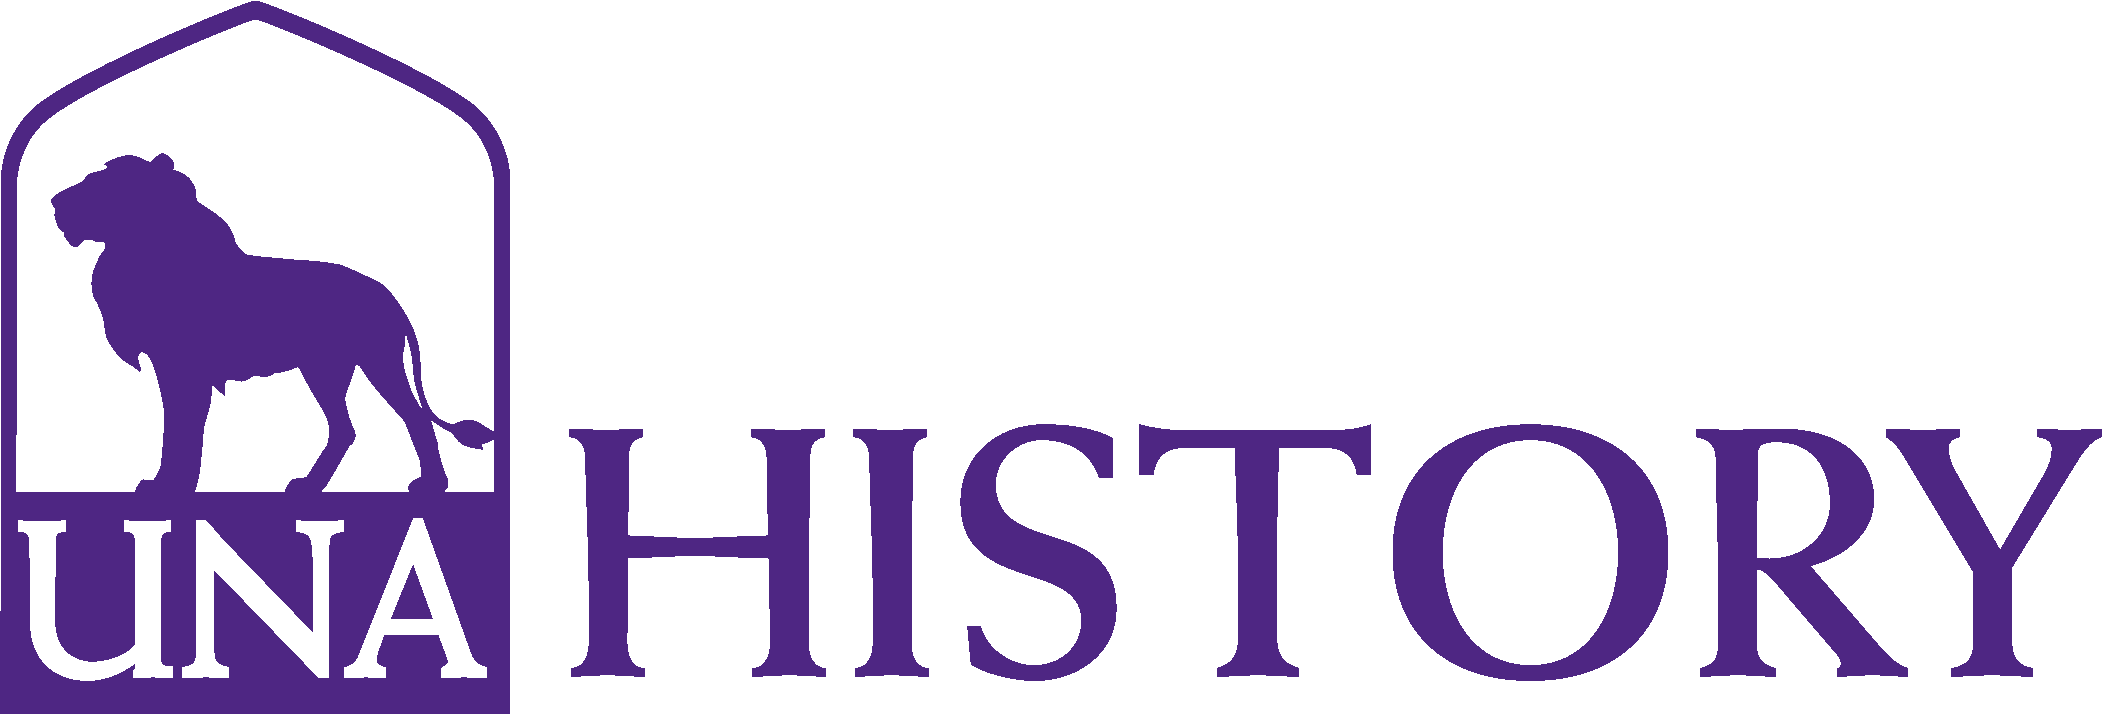 History logo 3